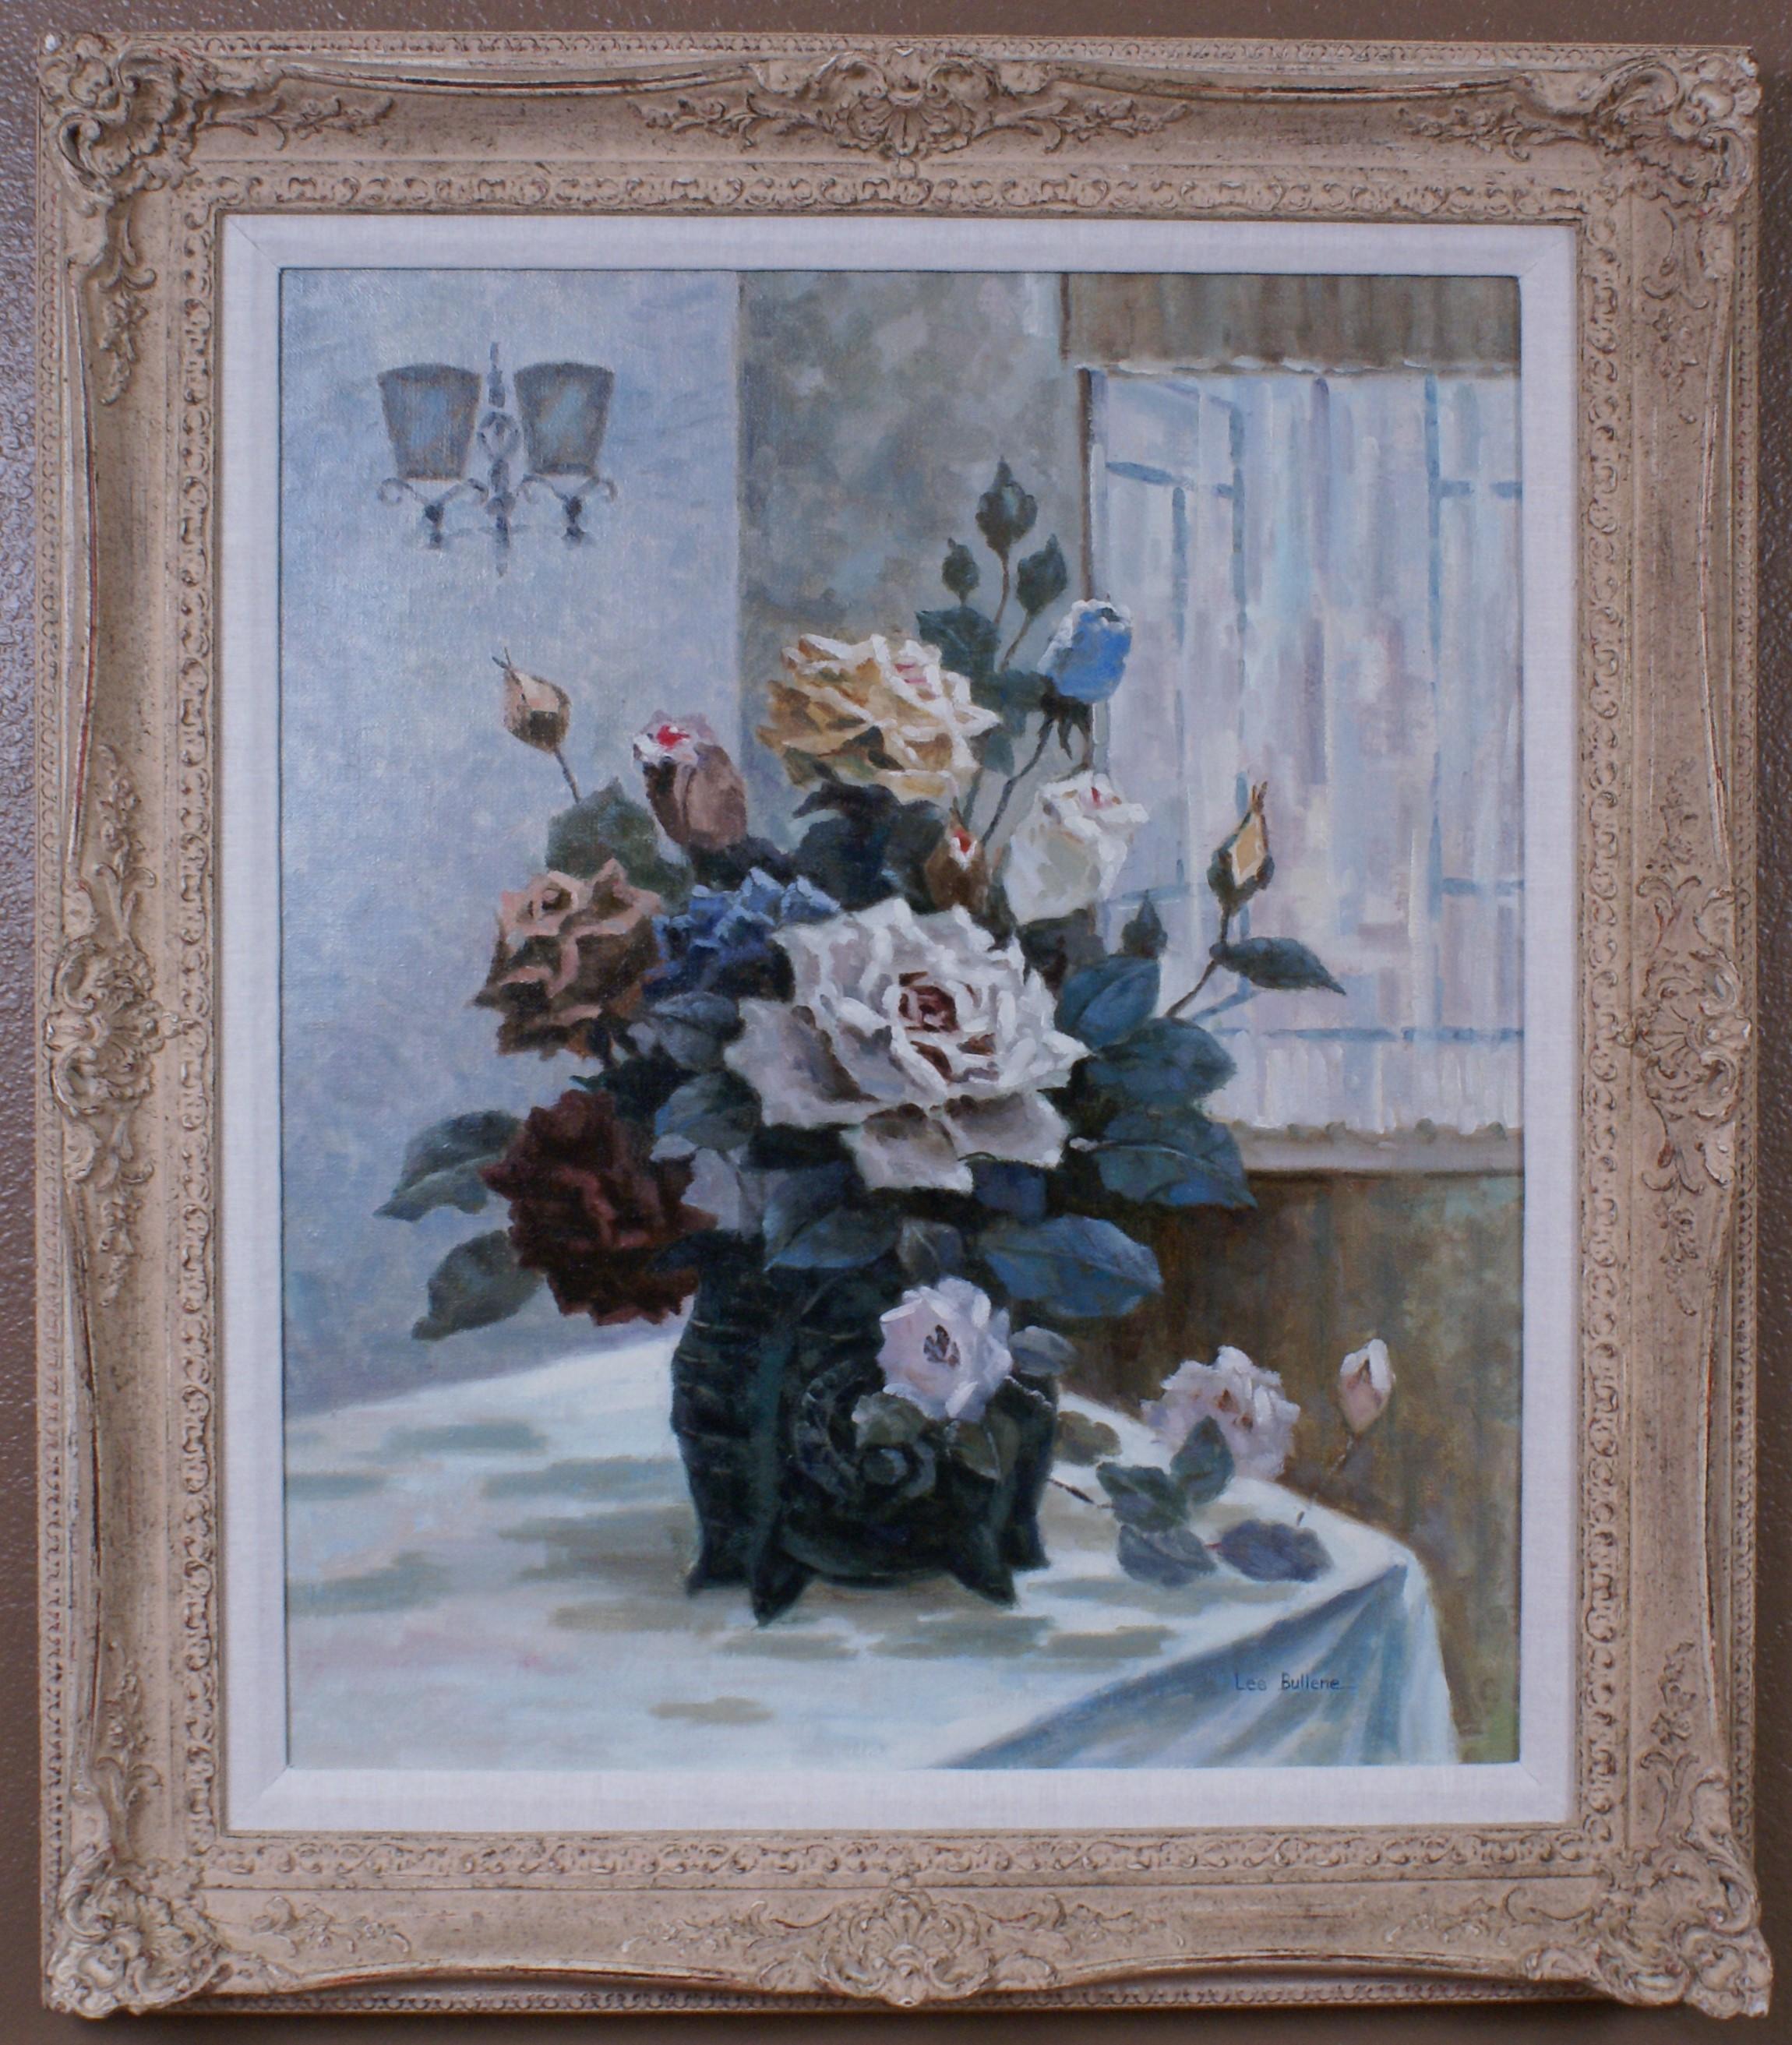 Les Bullene Still-Life Painting - {Floral Still Life of Roses}